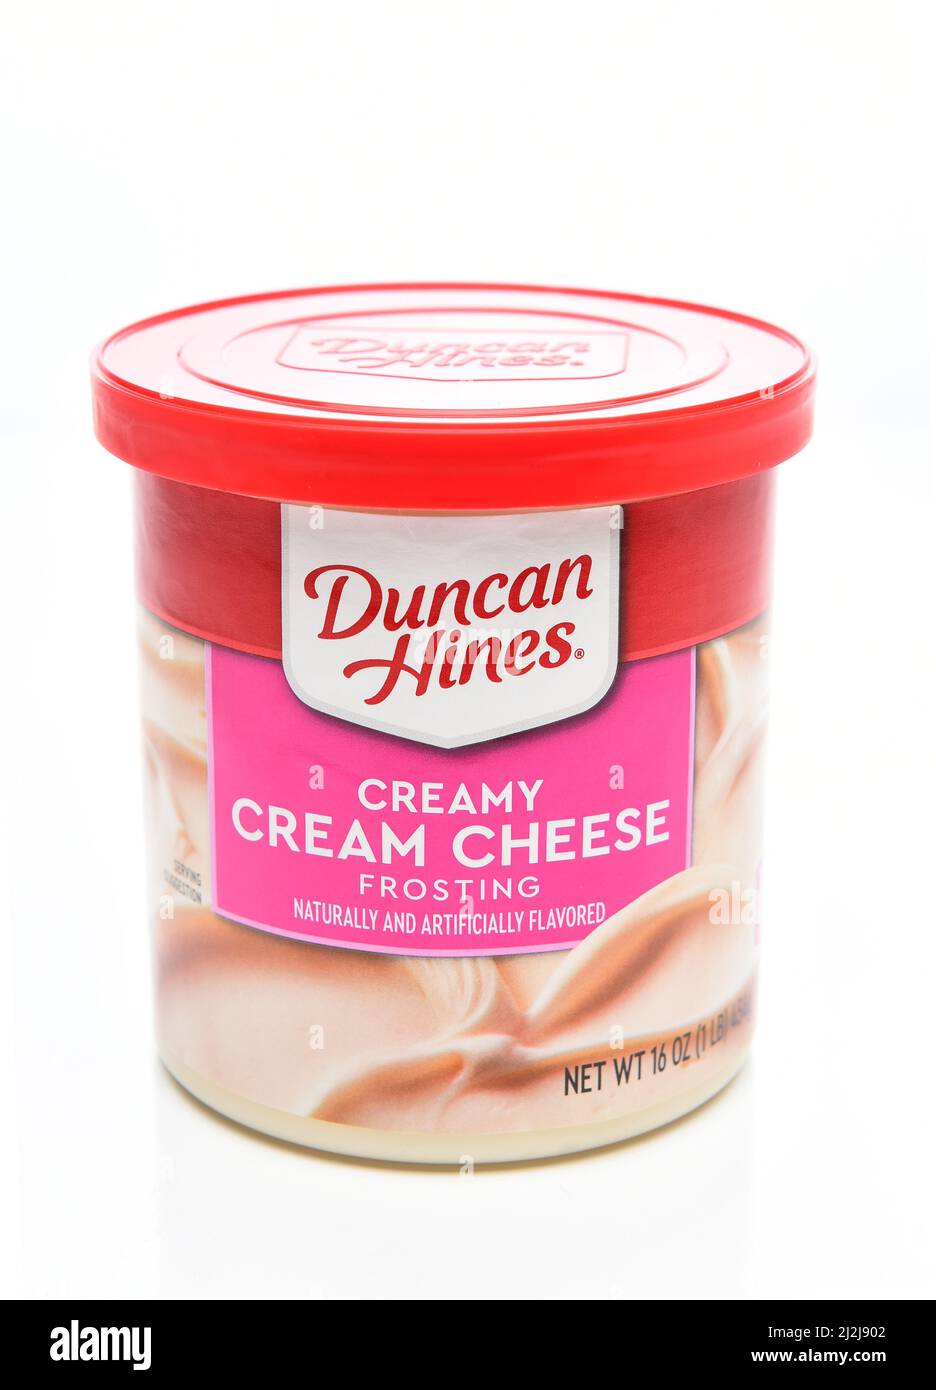 IRVINE, CALIFORNIE - 1 avril 2022 : une canette de fromage à la crème Duncan Hines Frosting. Banque D'Images